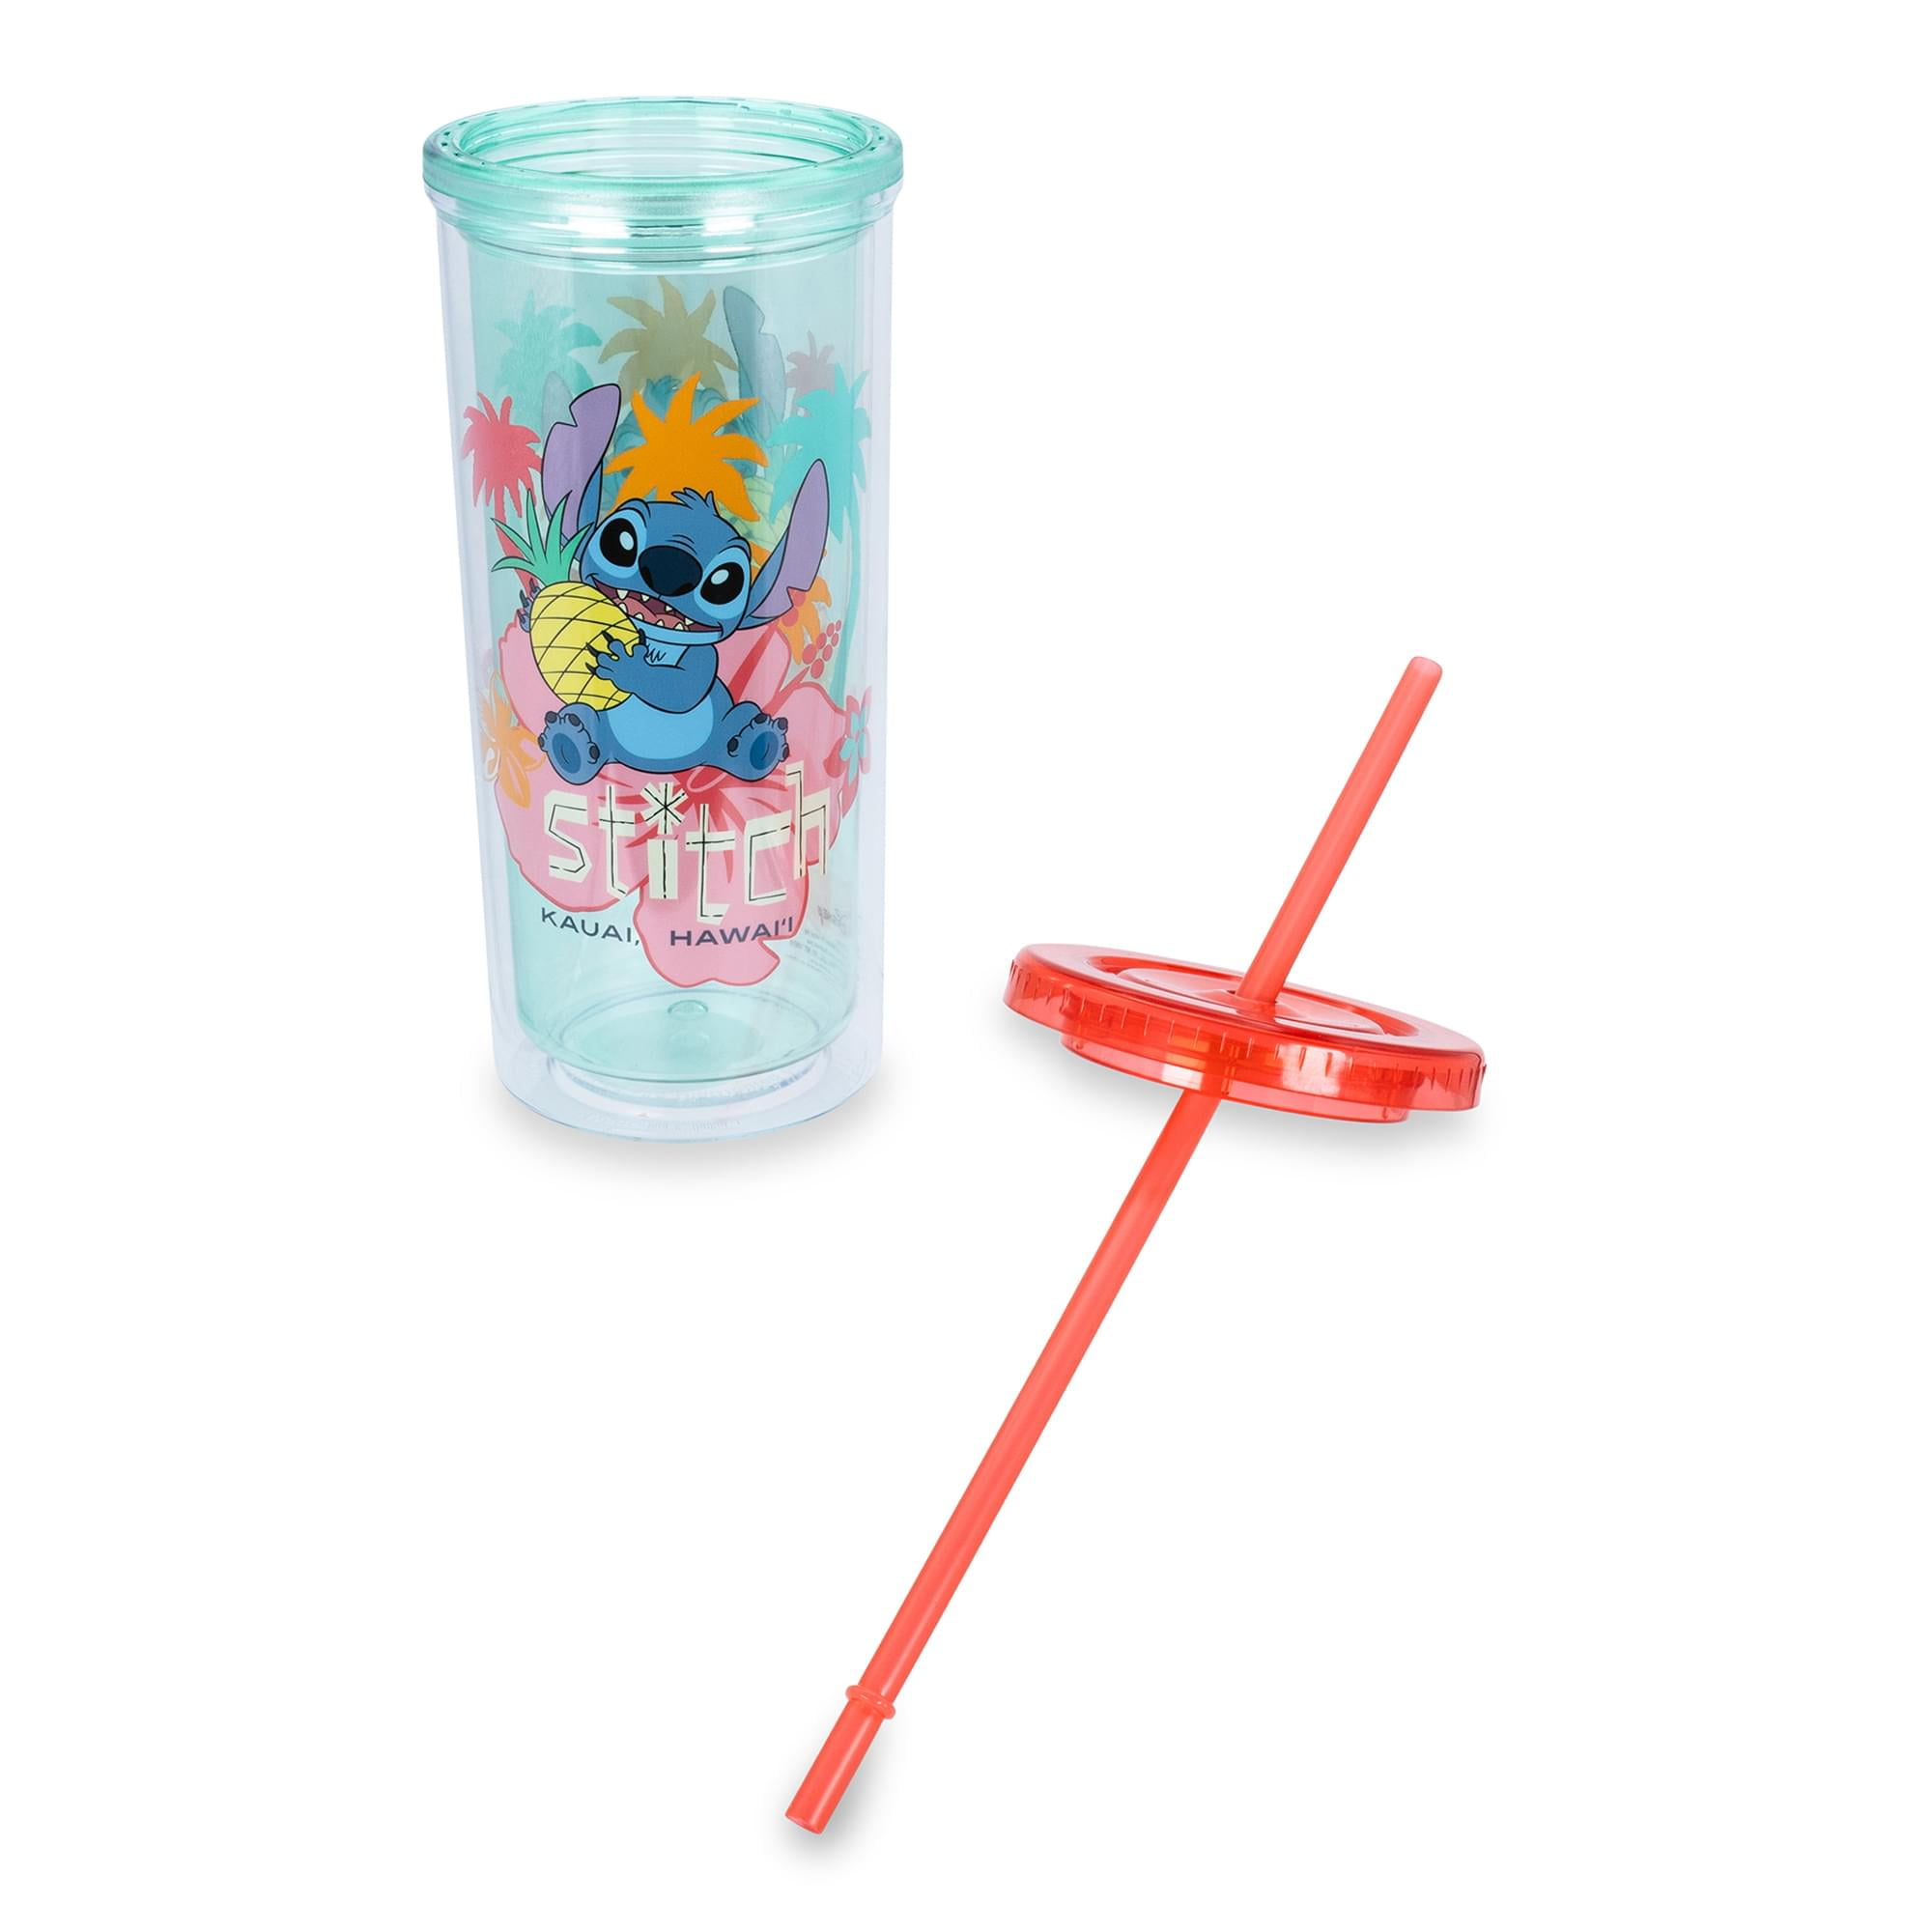 Lilo and Stitch Scrump 20oz Plastic Carnival Cup